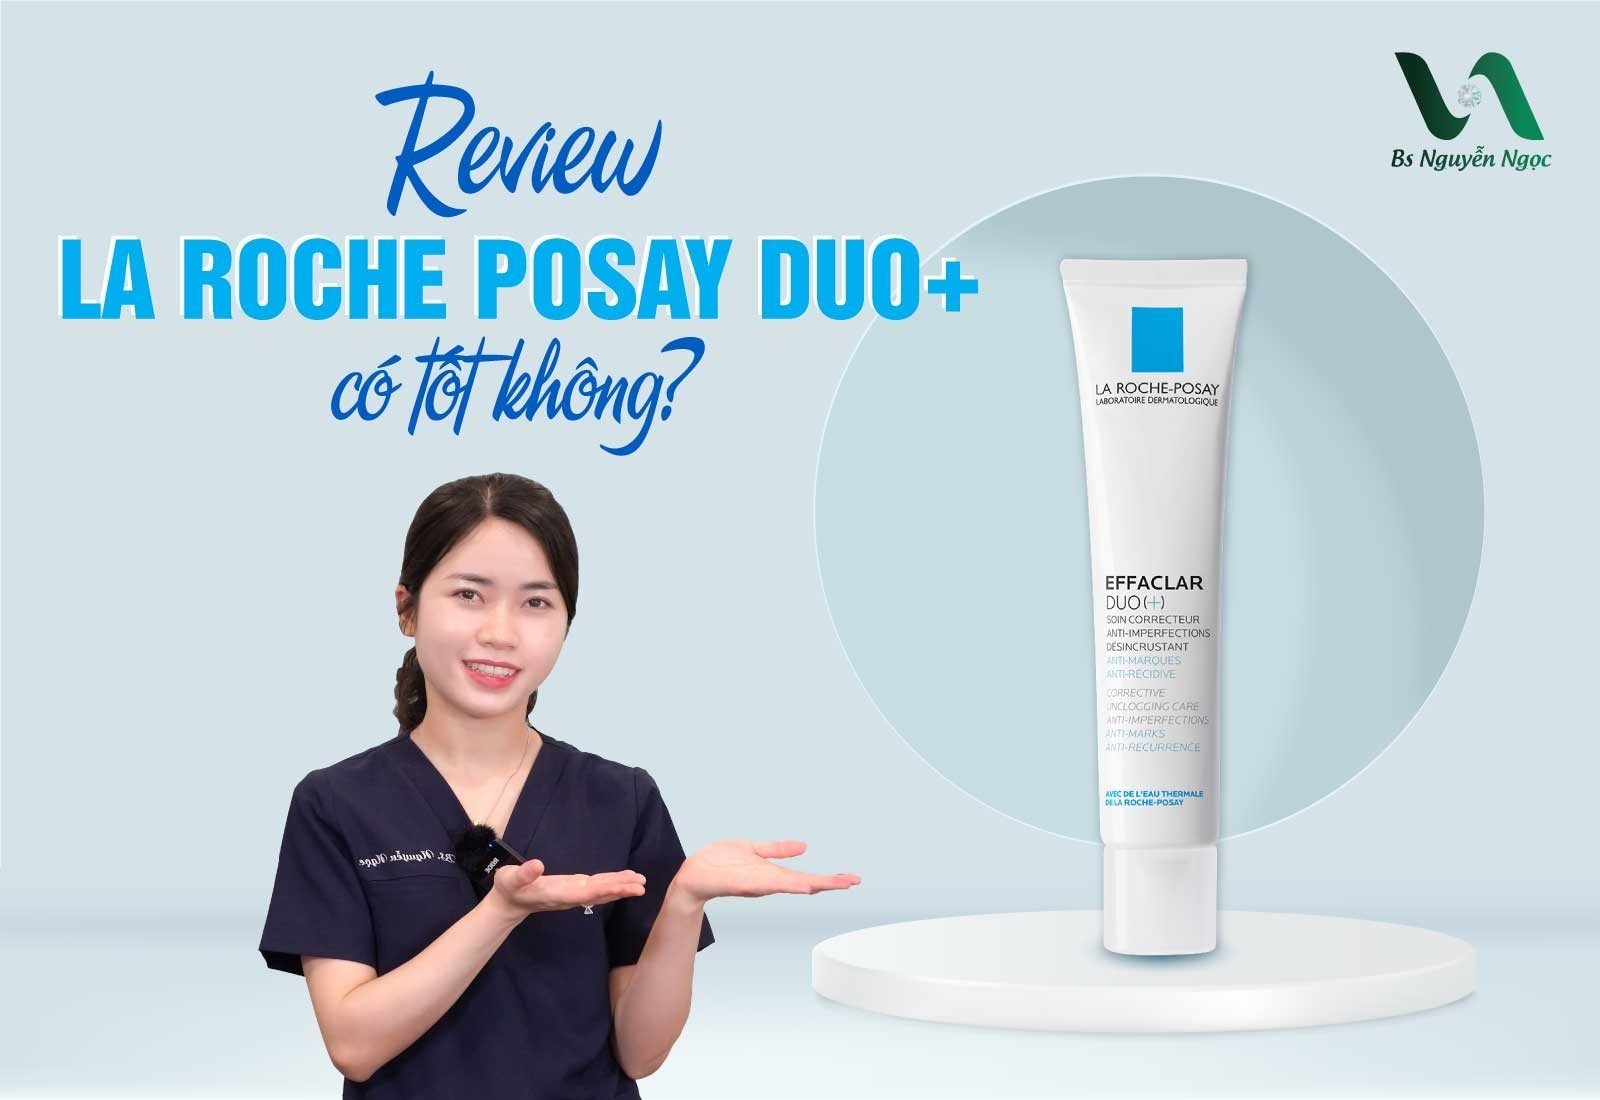 Review La Roche Posay duo+ có tốt không?